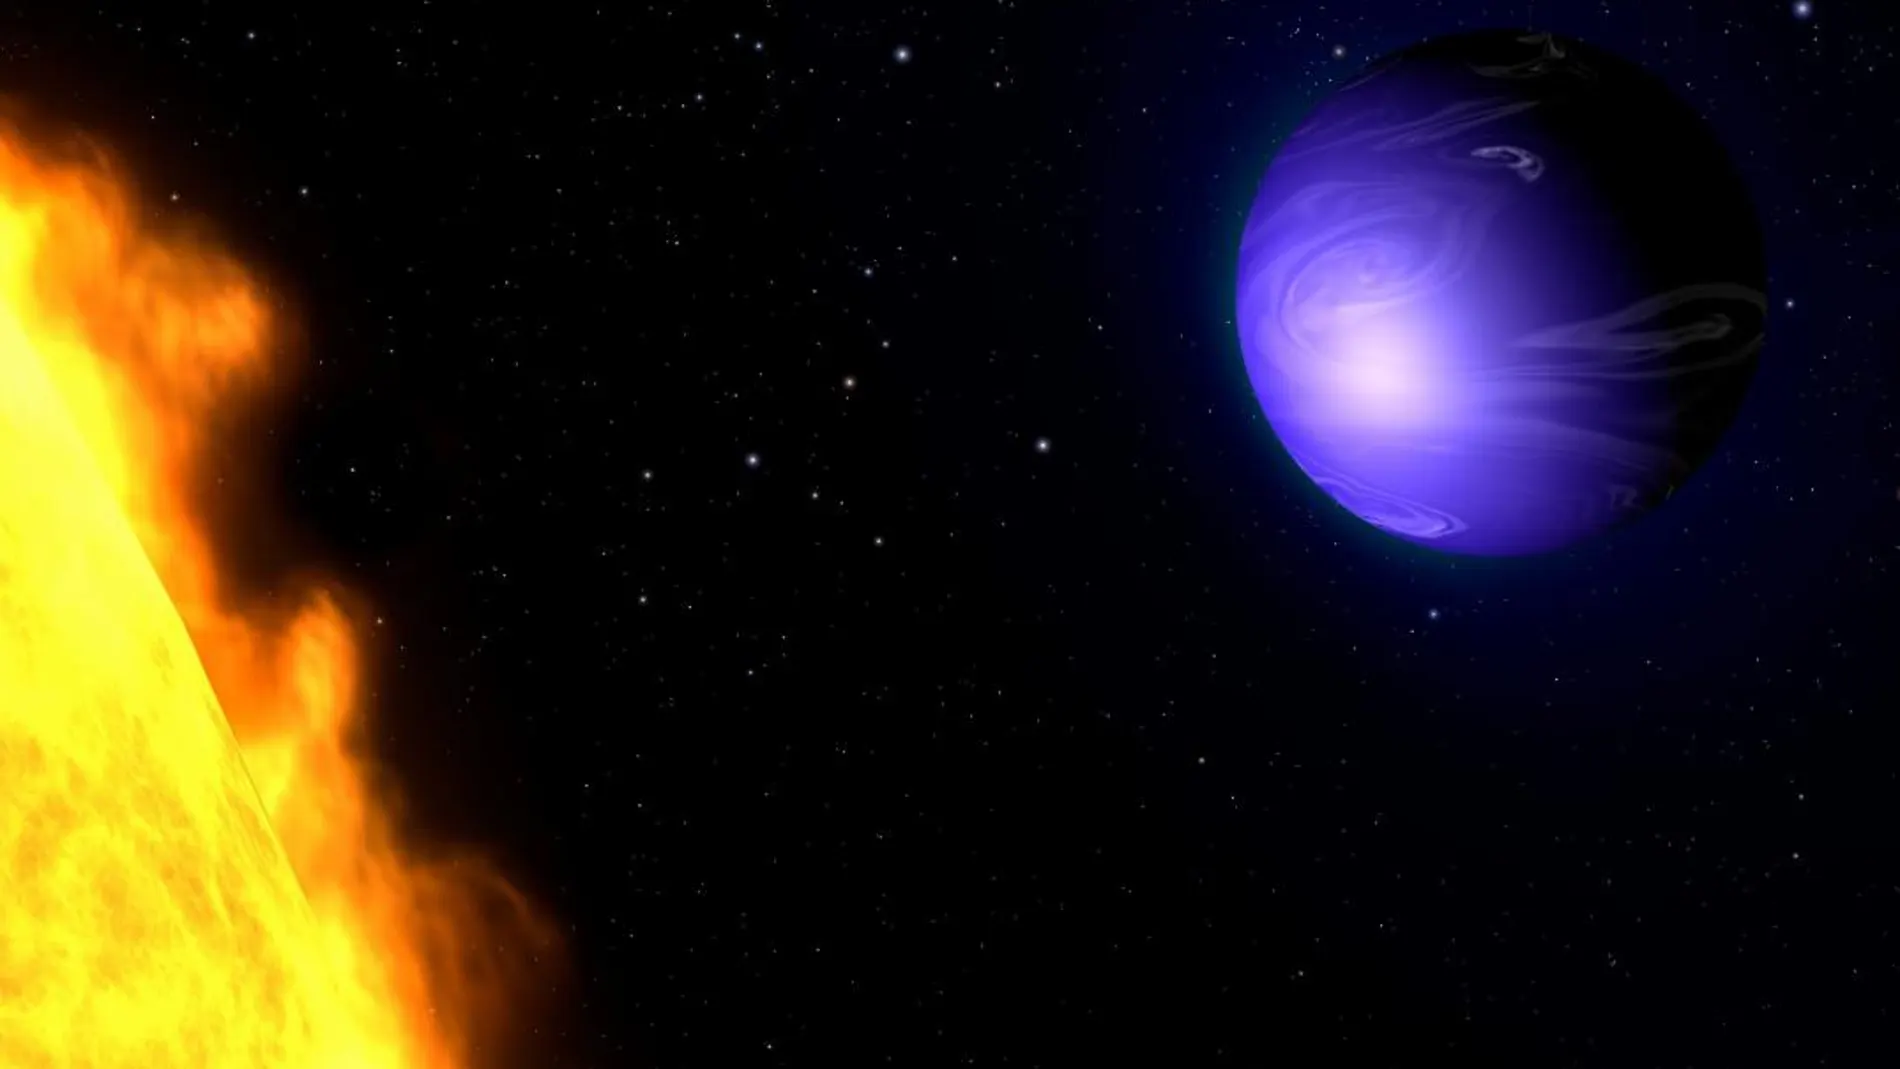 Imagen facilitada por la NASA que muestra una representación artística del planeta extrasolar 189733b mientras orbita alrededor de su estrella enana naranja HD 189733A